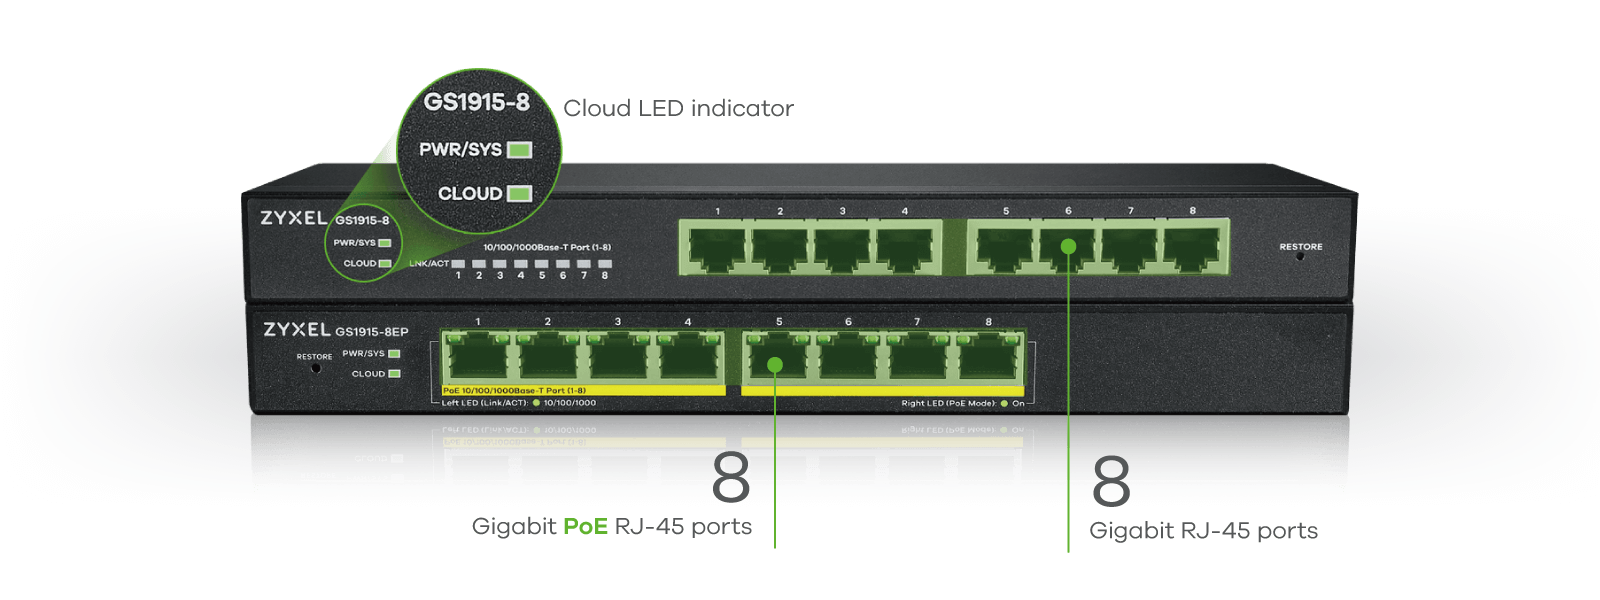 Seria kompaktowych i niedrogich przełączników opartych na chmurze Seria GS1915 obejmuje dwa 8-portowe przełączniki, z opcją PoE lub bez. Model PoE GS1915-8EP obsługuje pełne 8 portów PoE+. Oba modele są wyposażone w przydatne funkcje i doskonałą wydajność dzięki funkcji plug-n-play.